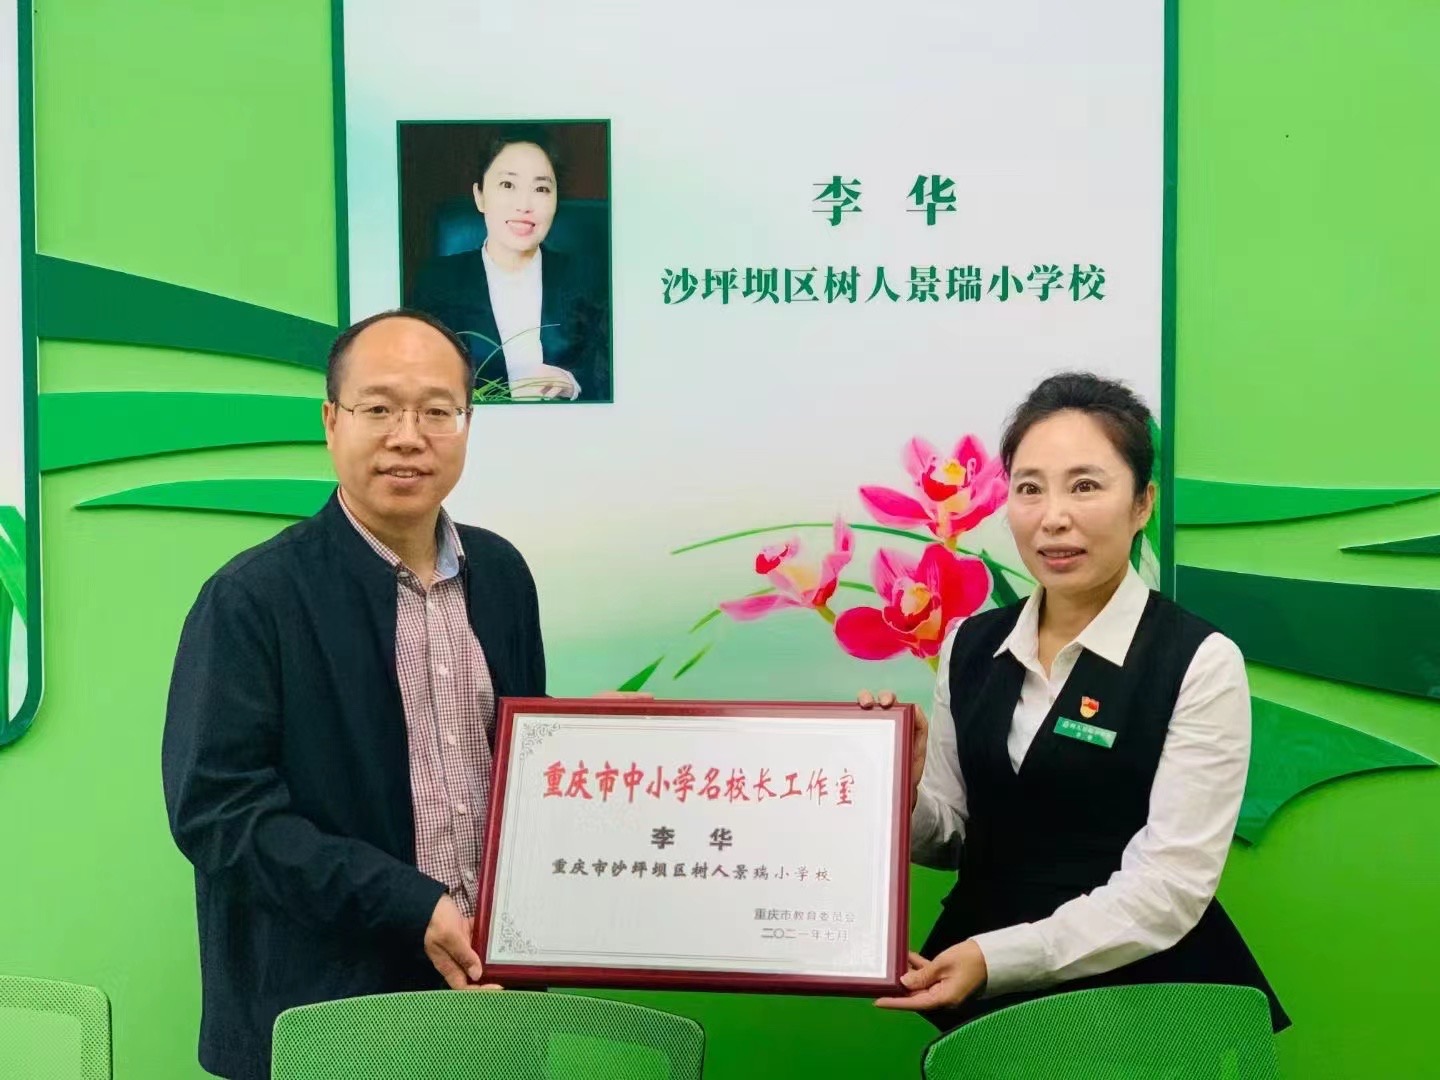 热烈祝贺树人景瑞小学李华校长成立重庆市首批名校长工作室